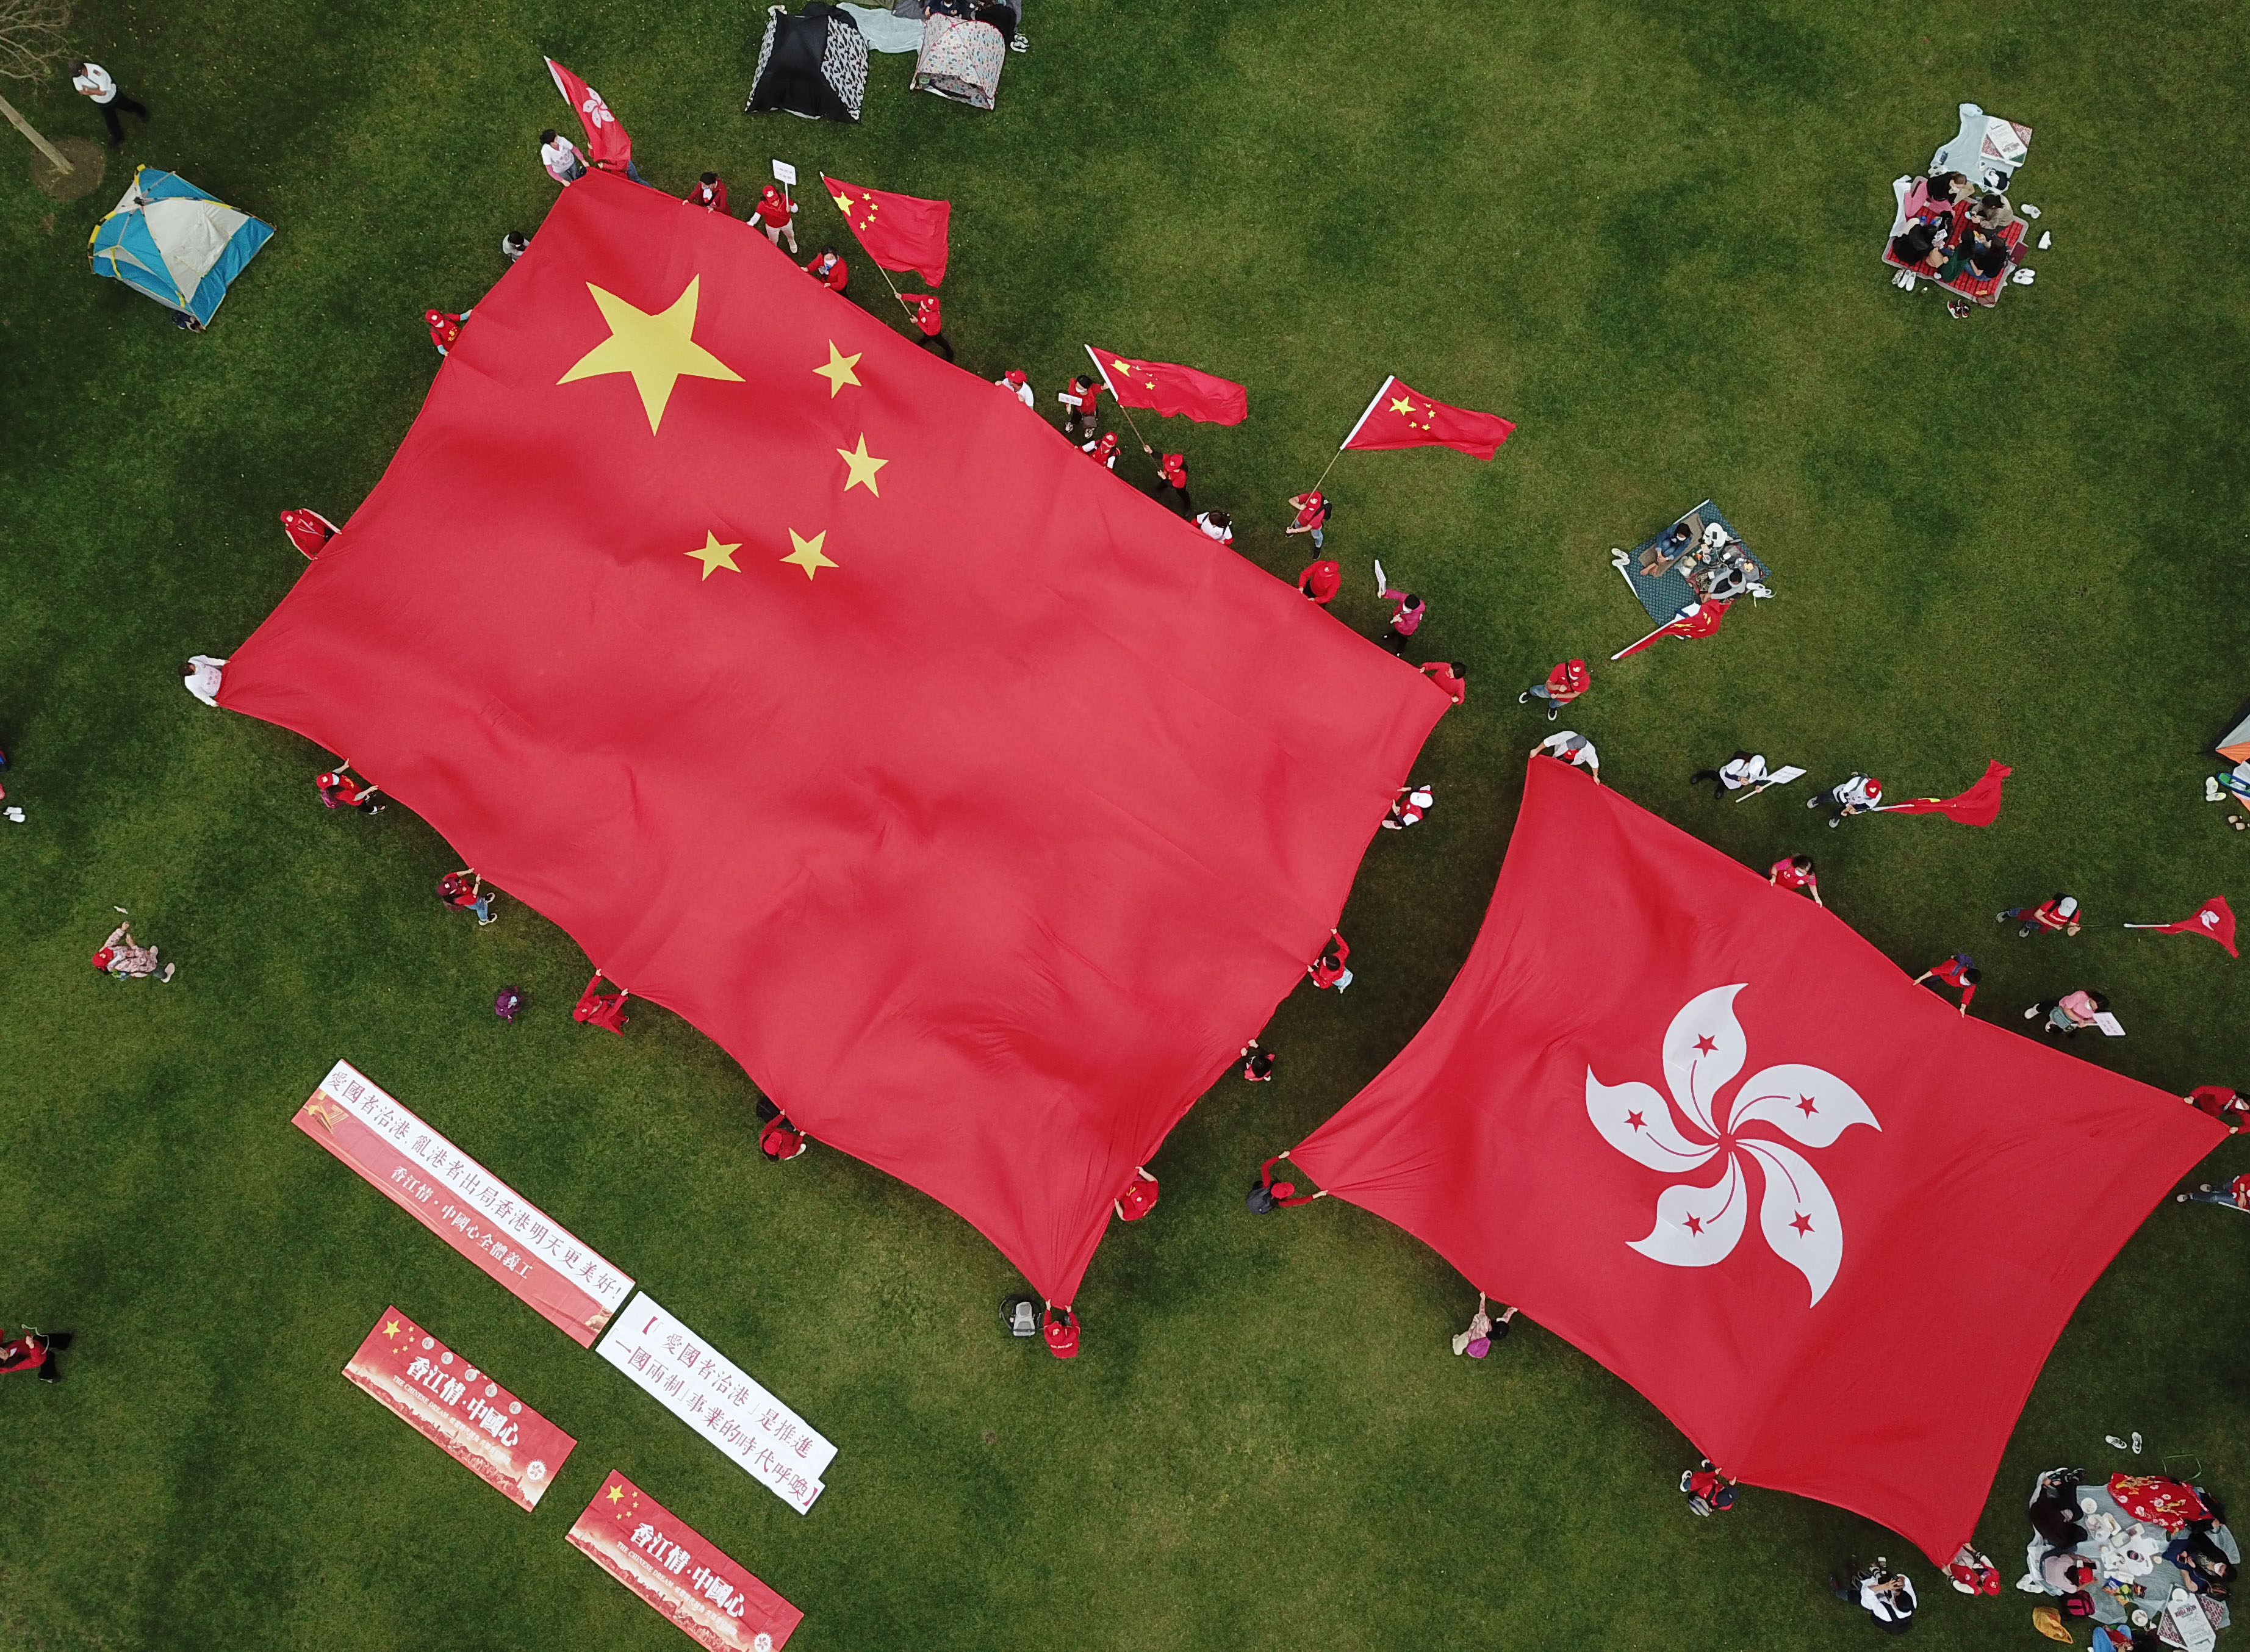 Hongkongers display the flags of China and Hong Kong in support of patriots governing Hong Kong, at Tamar Park on March 6. Photo: Xinhua